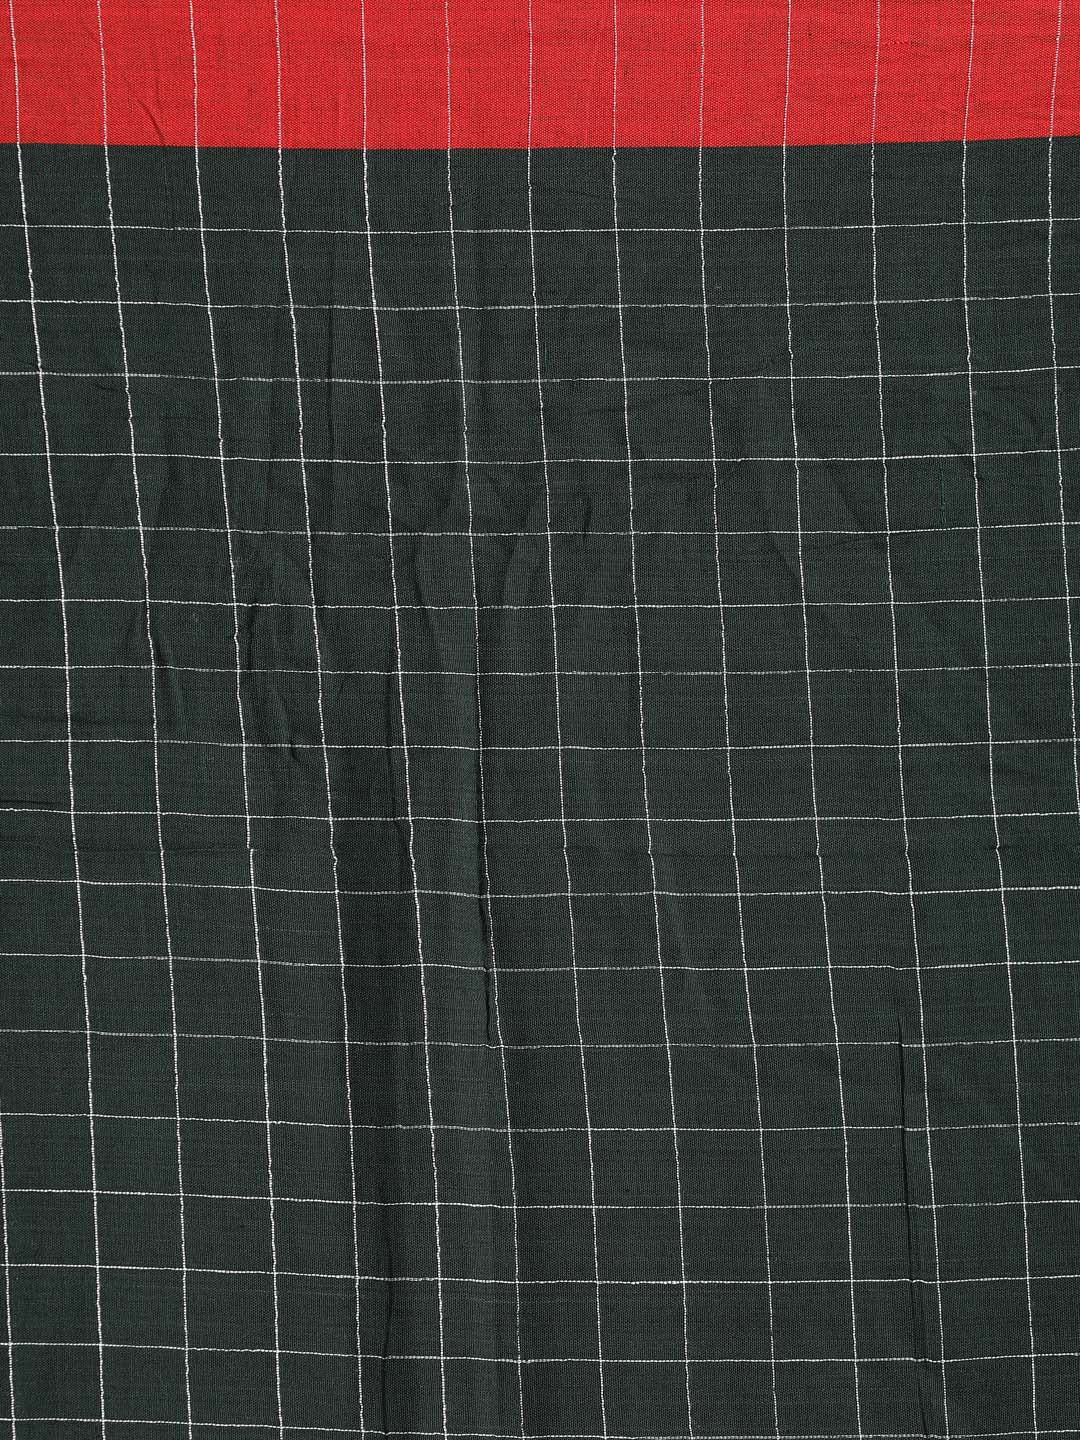 Indethnic Green Bengal Handloom Pure Cotton Saree Work Saree - Saree Detail View